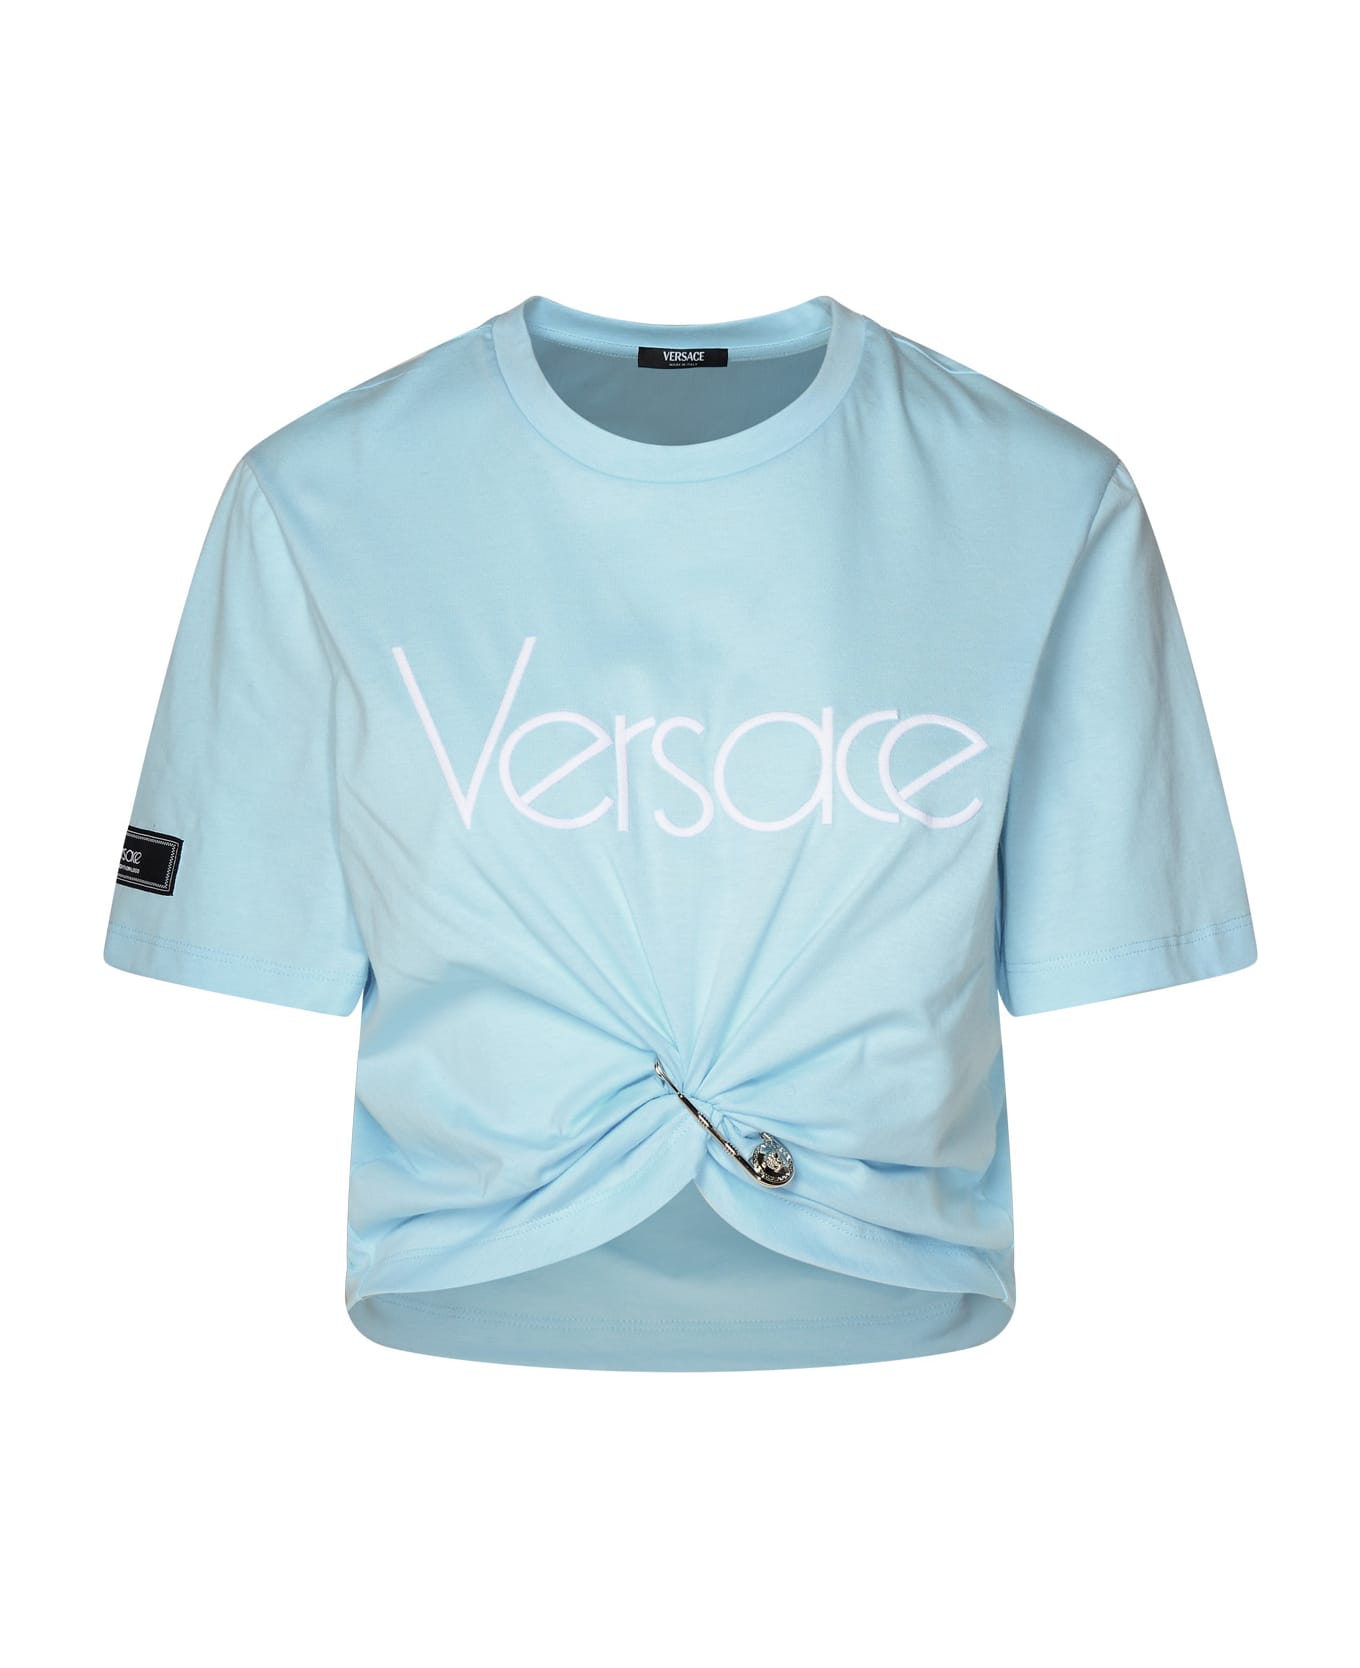 Versace Light Blue Cotton T-shirt - Light Blue